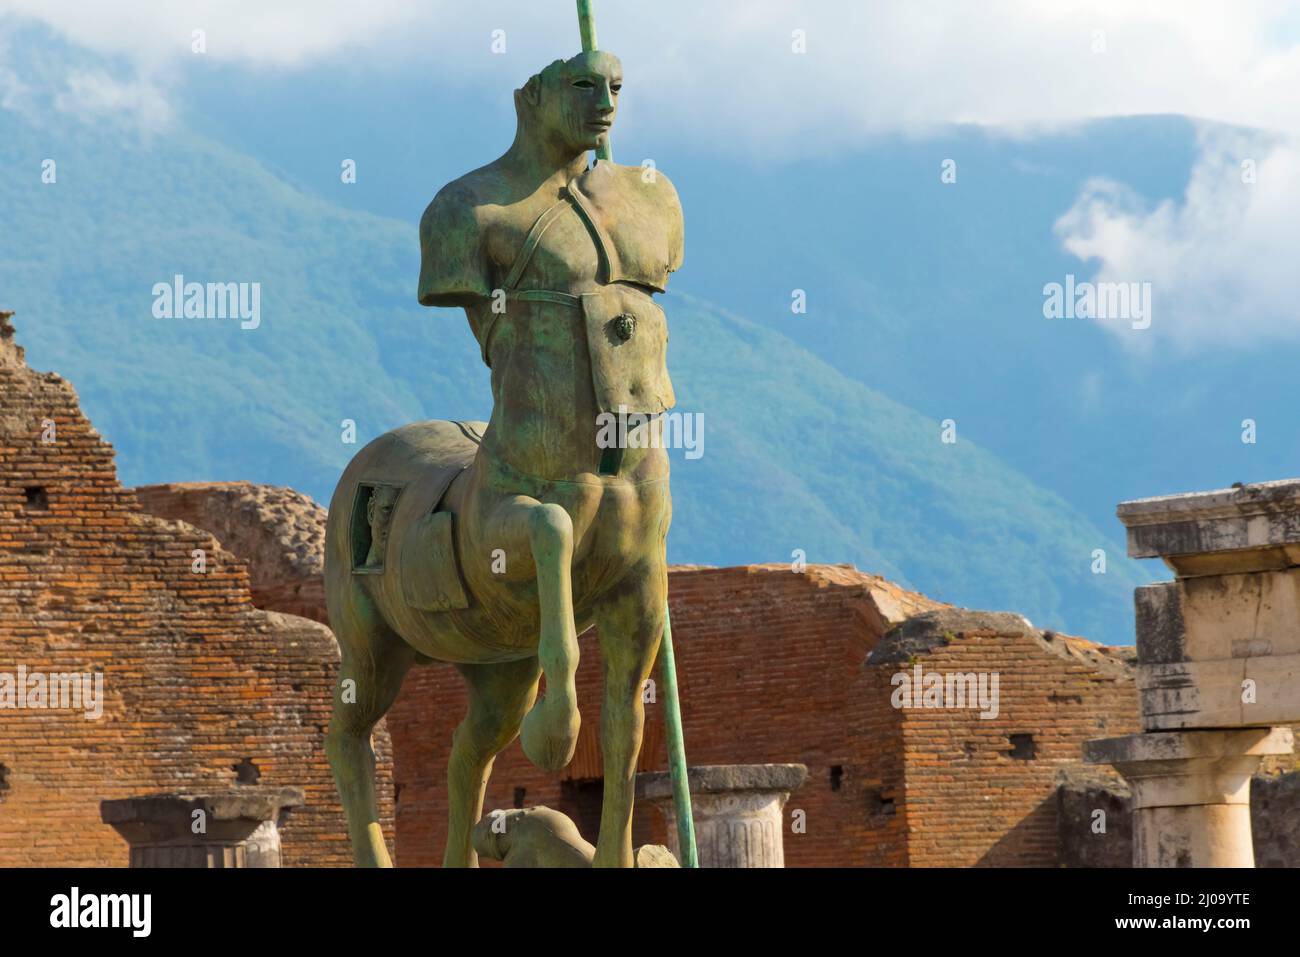 Ruines de Pompéi, statue de Centaur dans le Forum avec le Vésuve comme arrière-plan, site du patrimoine mondial de l'UNESCO, province de Naples, région de Campanie, Ital Banque D'Images